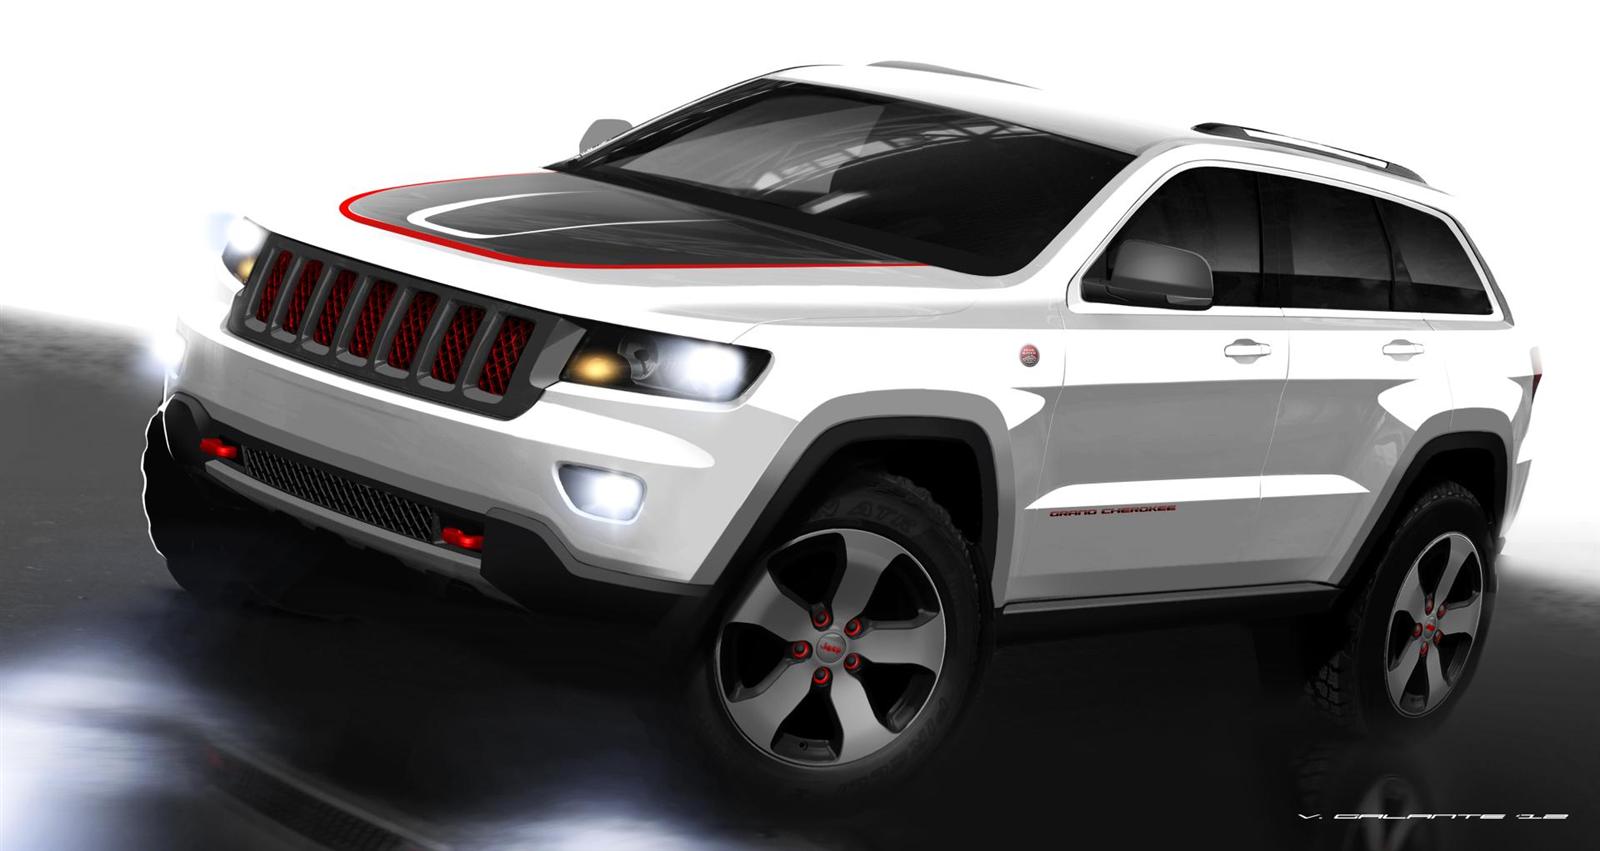 2012 Jeep Grand Cherokee Trailhawk Concept